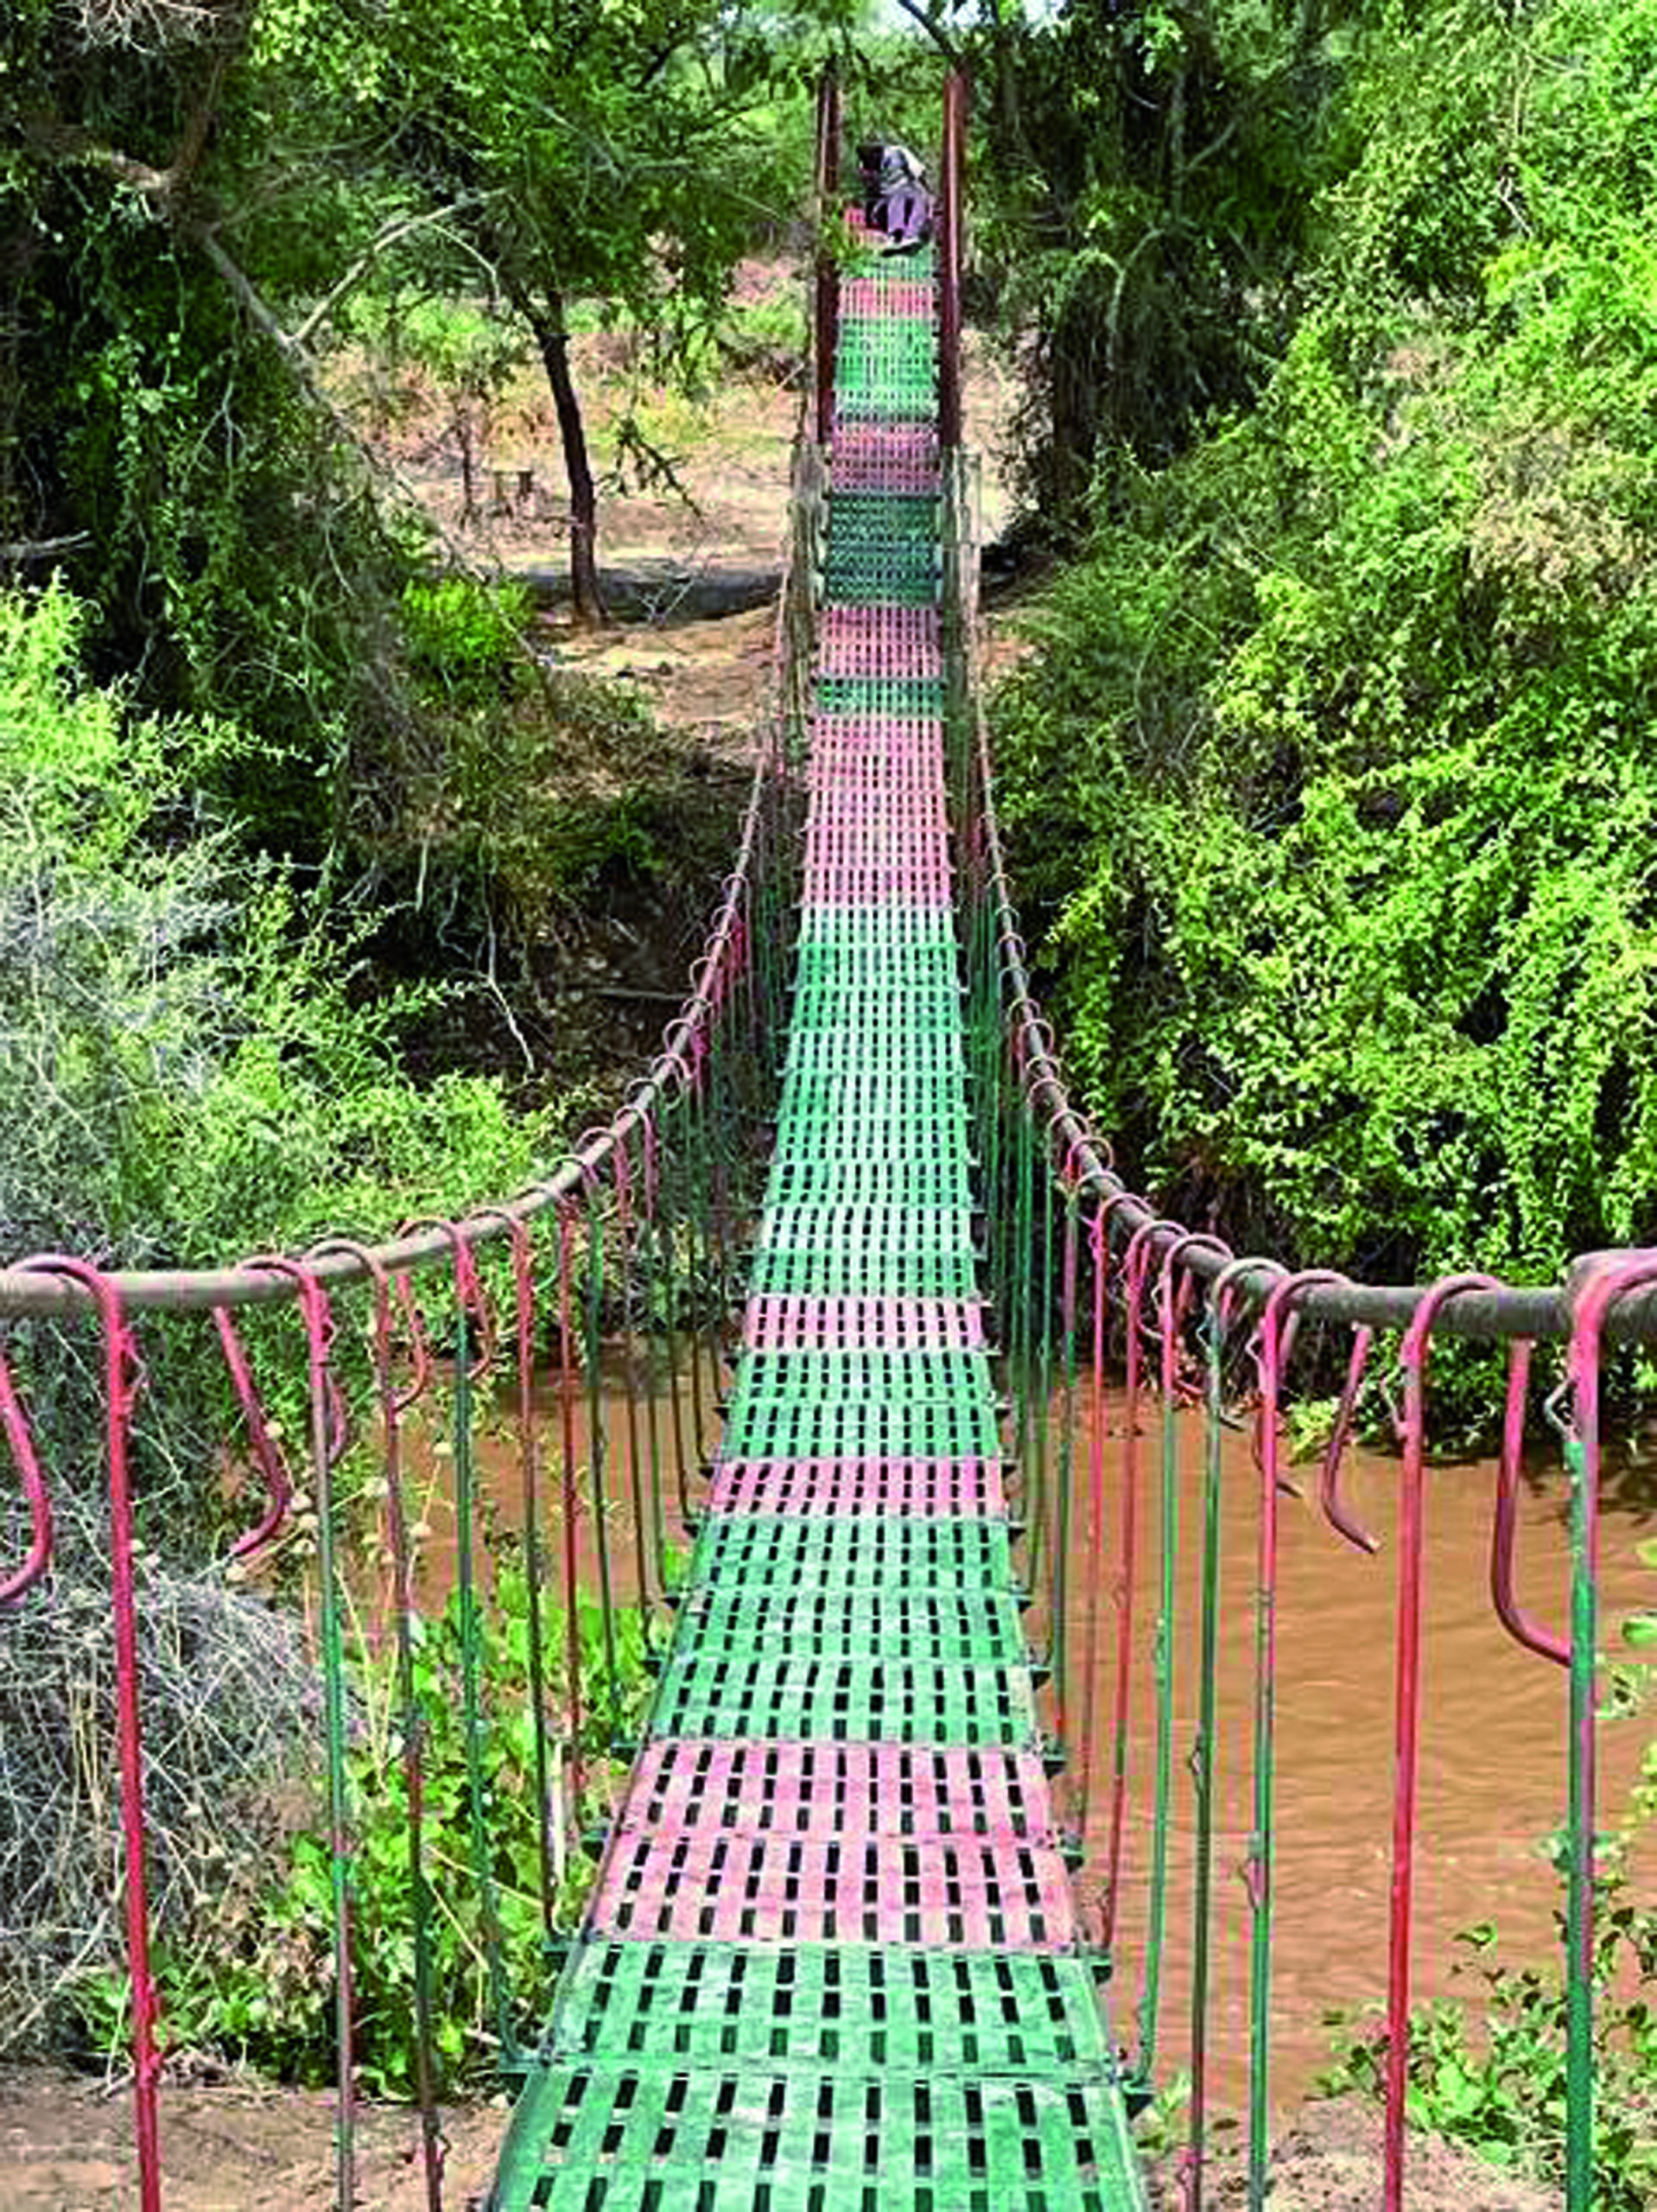 Footbridge in Mafuluto, Tanzania